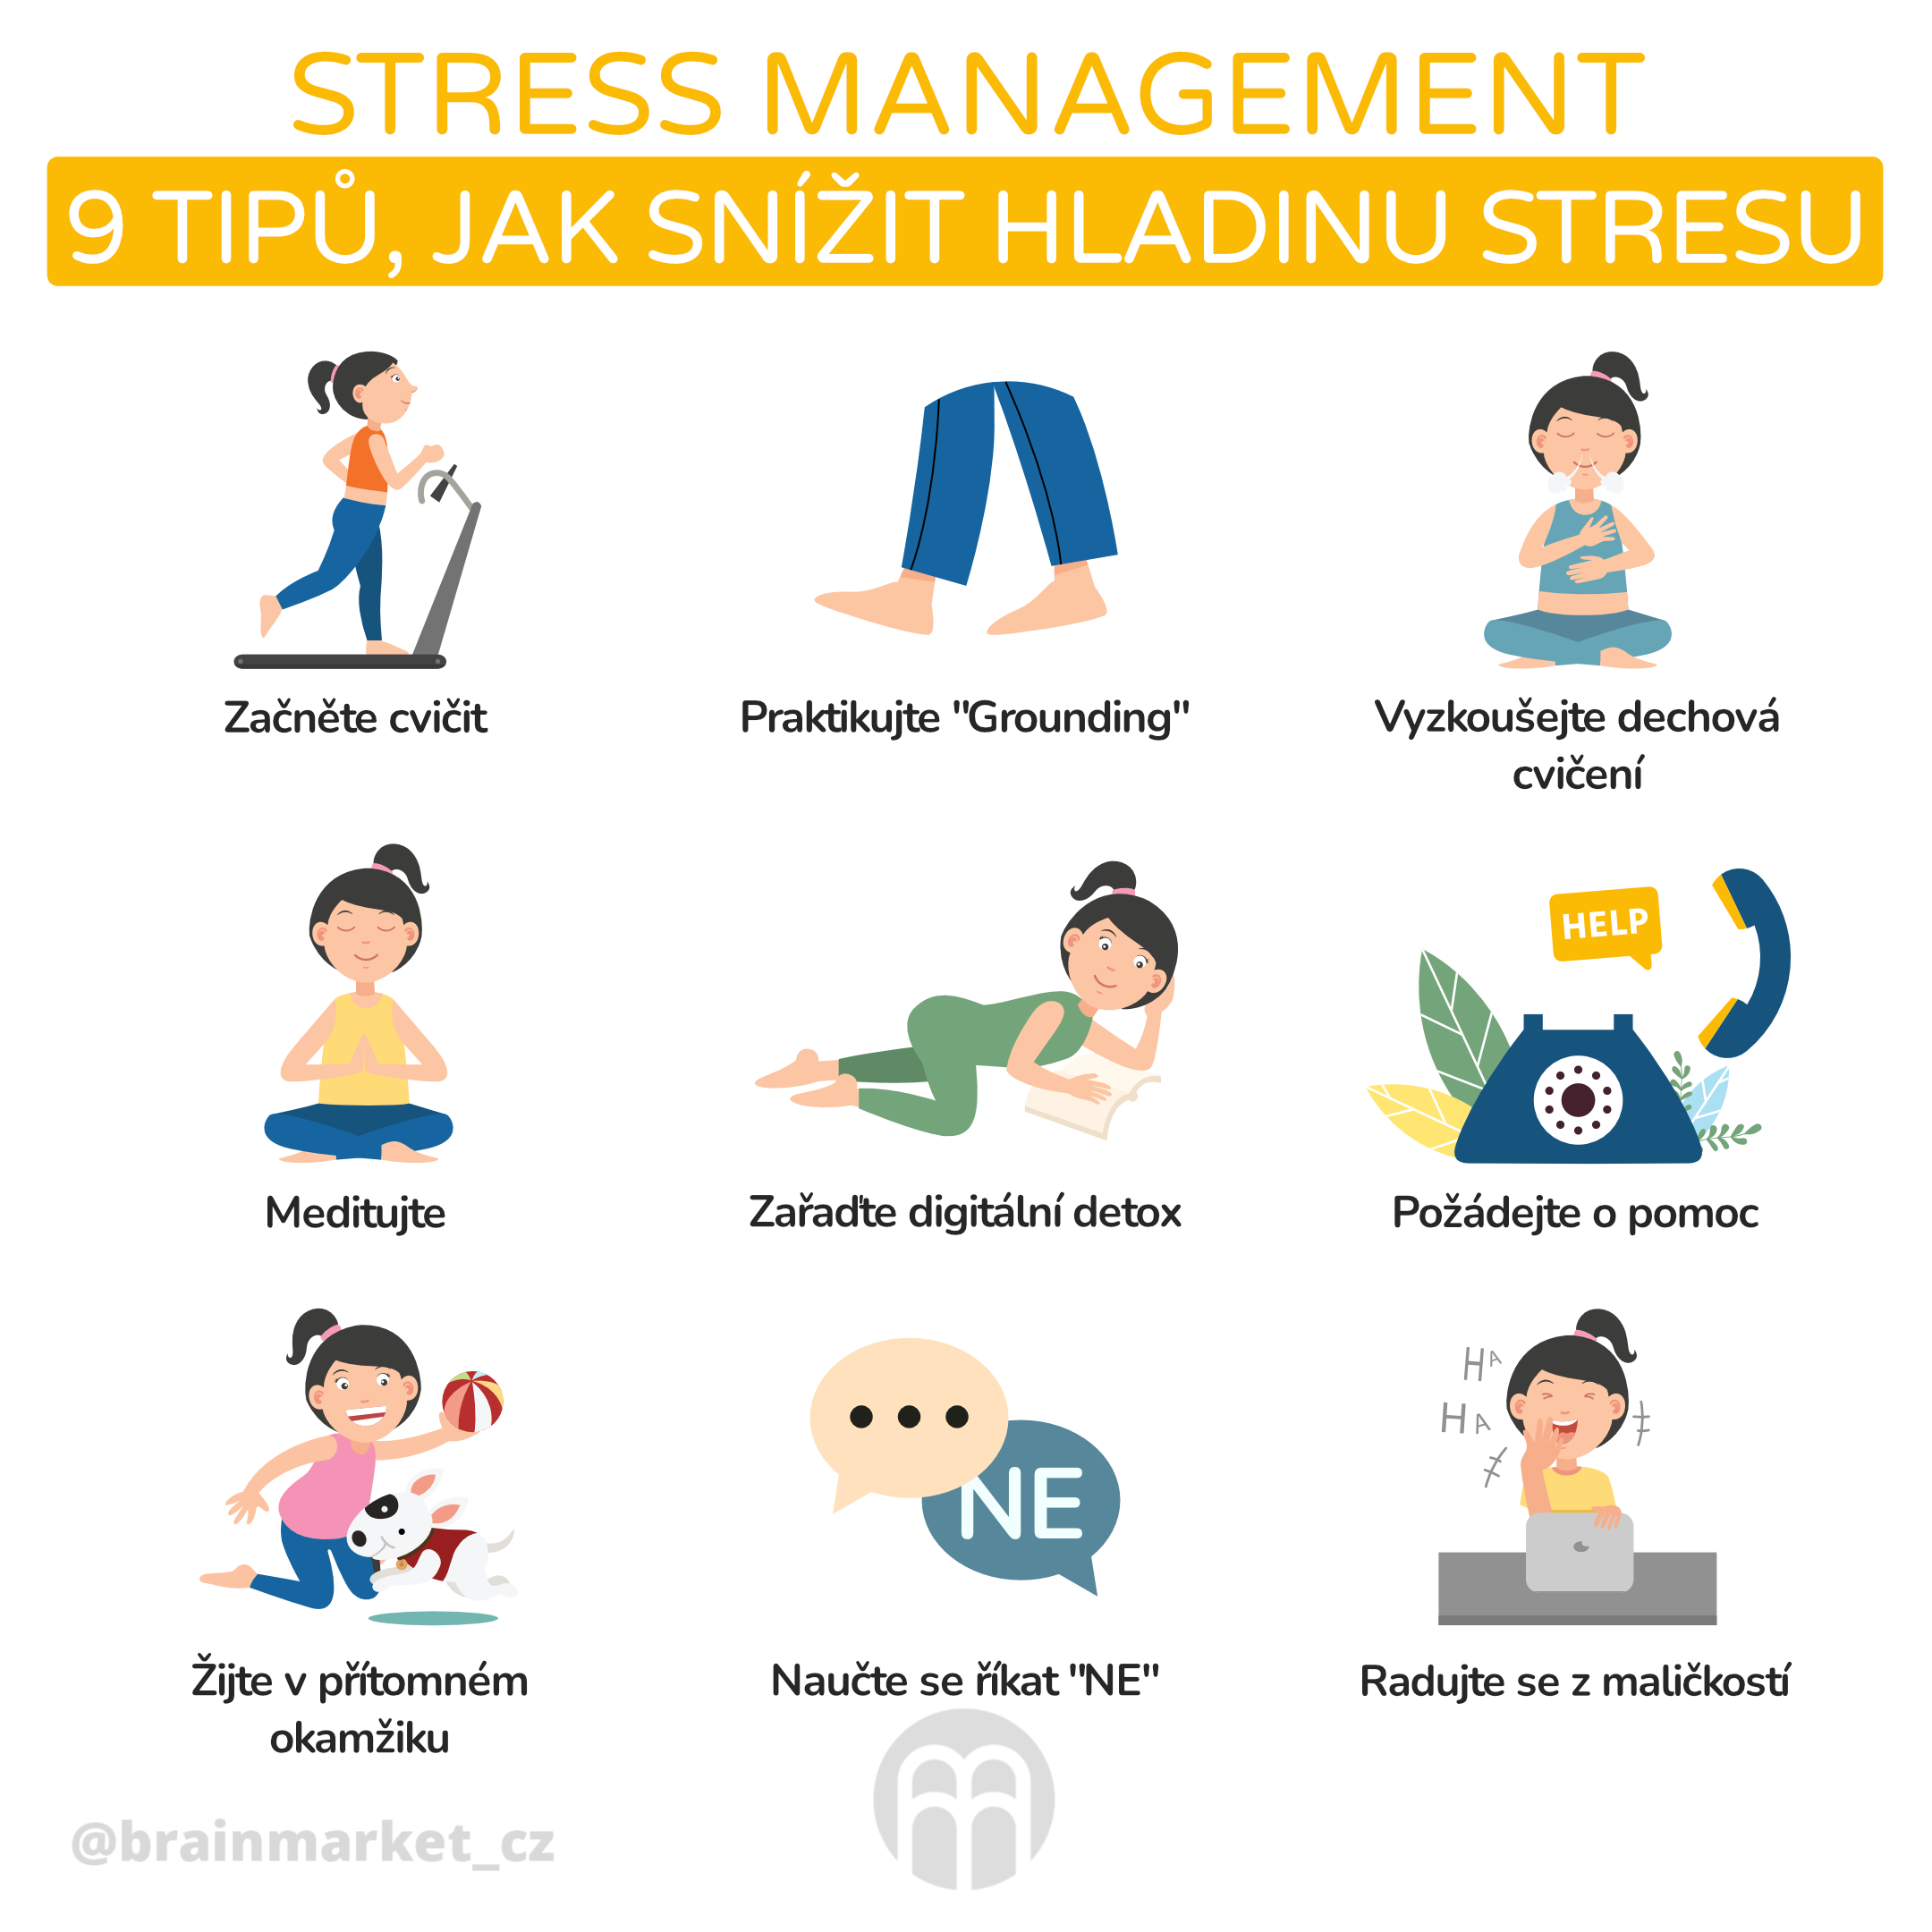 Co spouští stres?